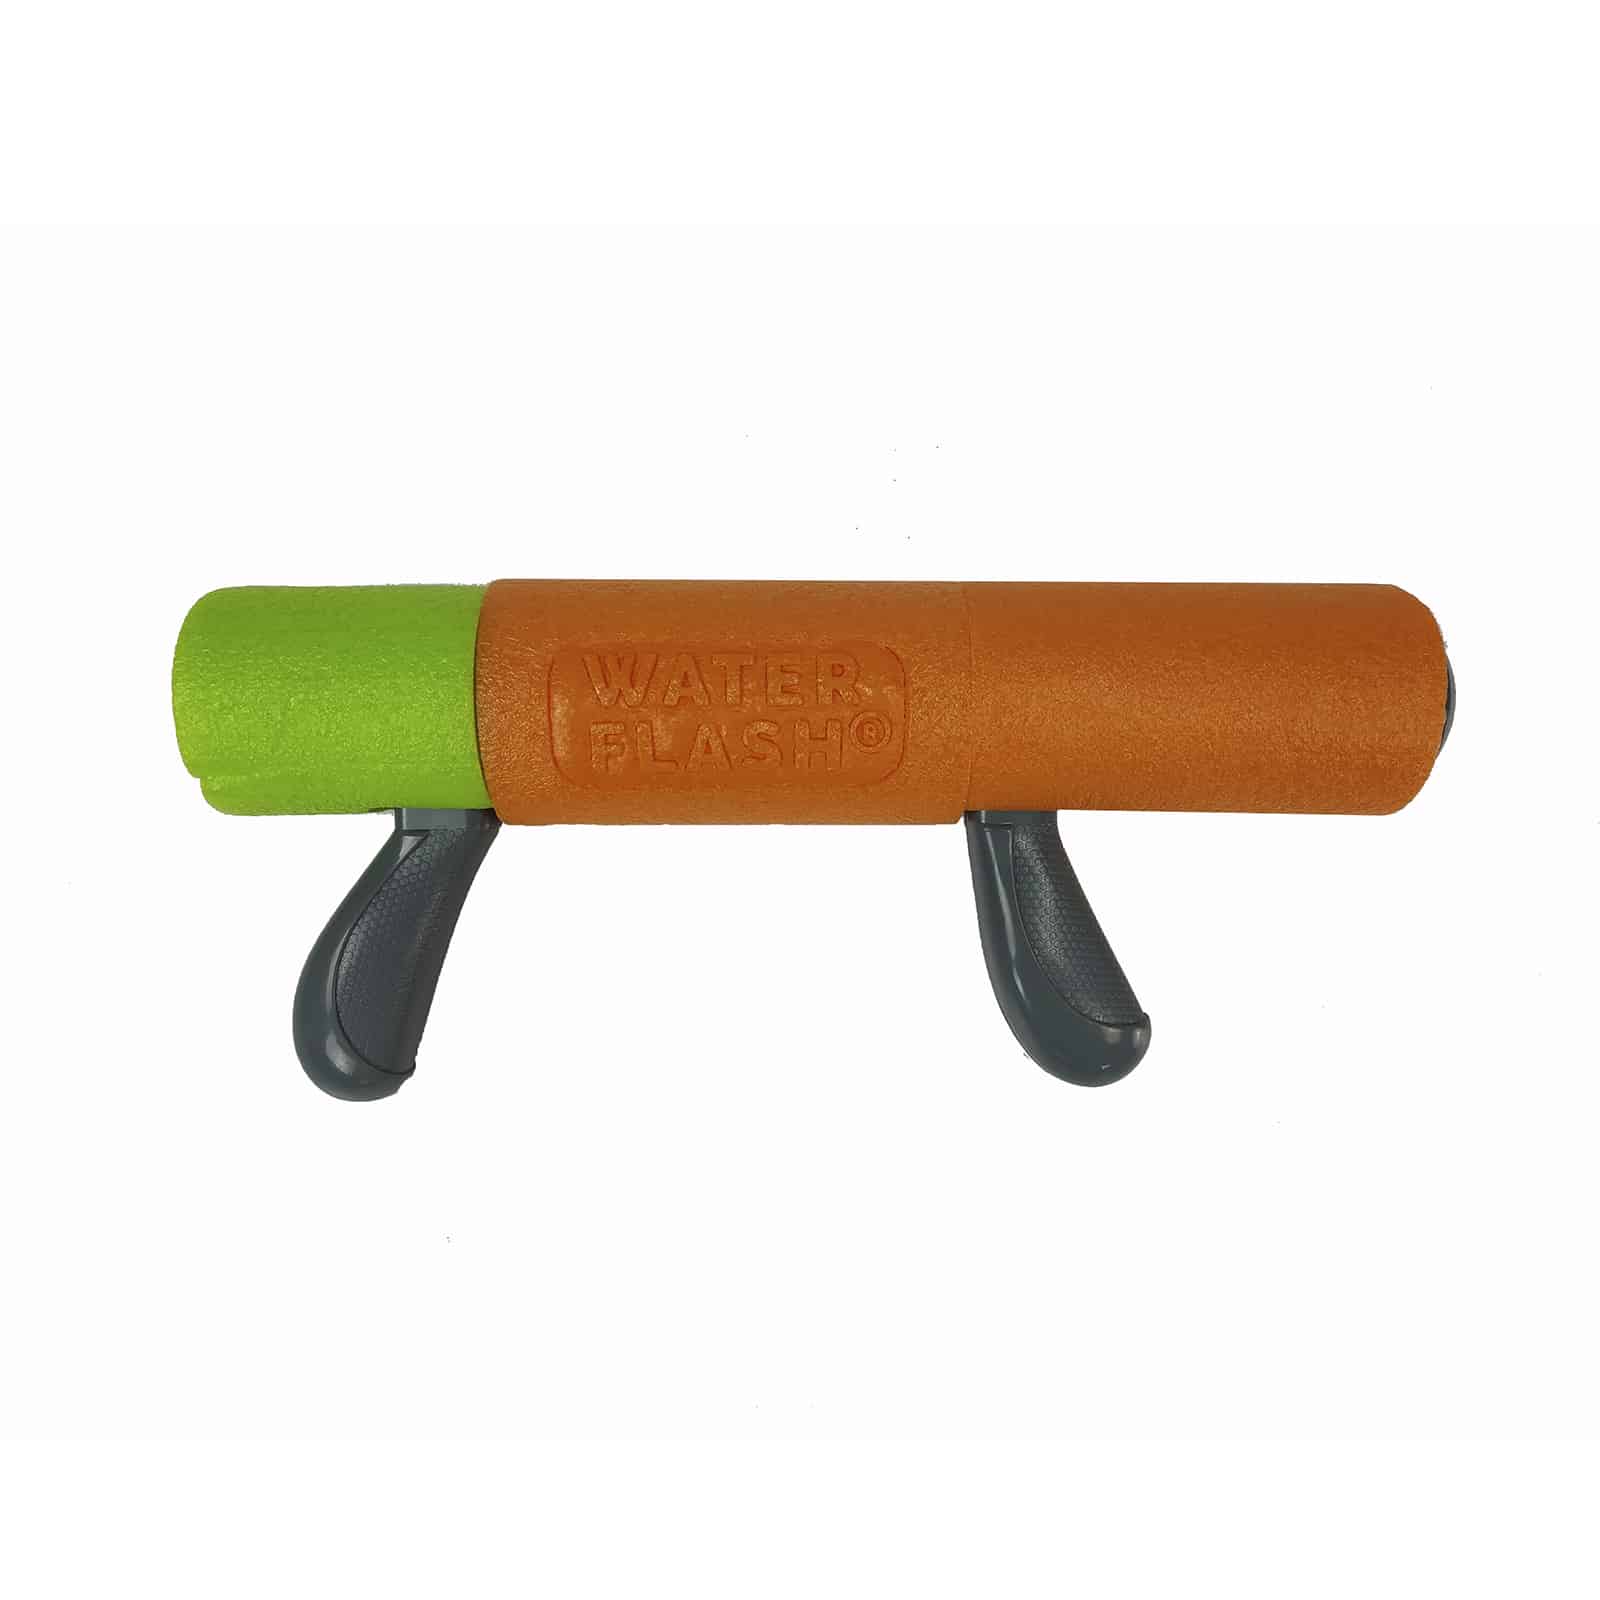 Pistola De Agua Outdoor Toys Waterflash Con Empuñadura 35x7 Cm - multicolor - 